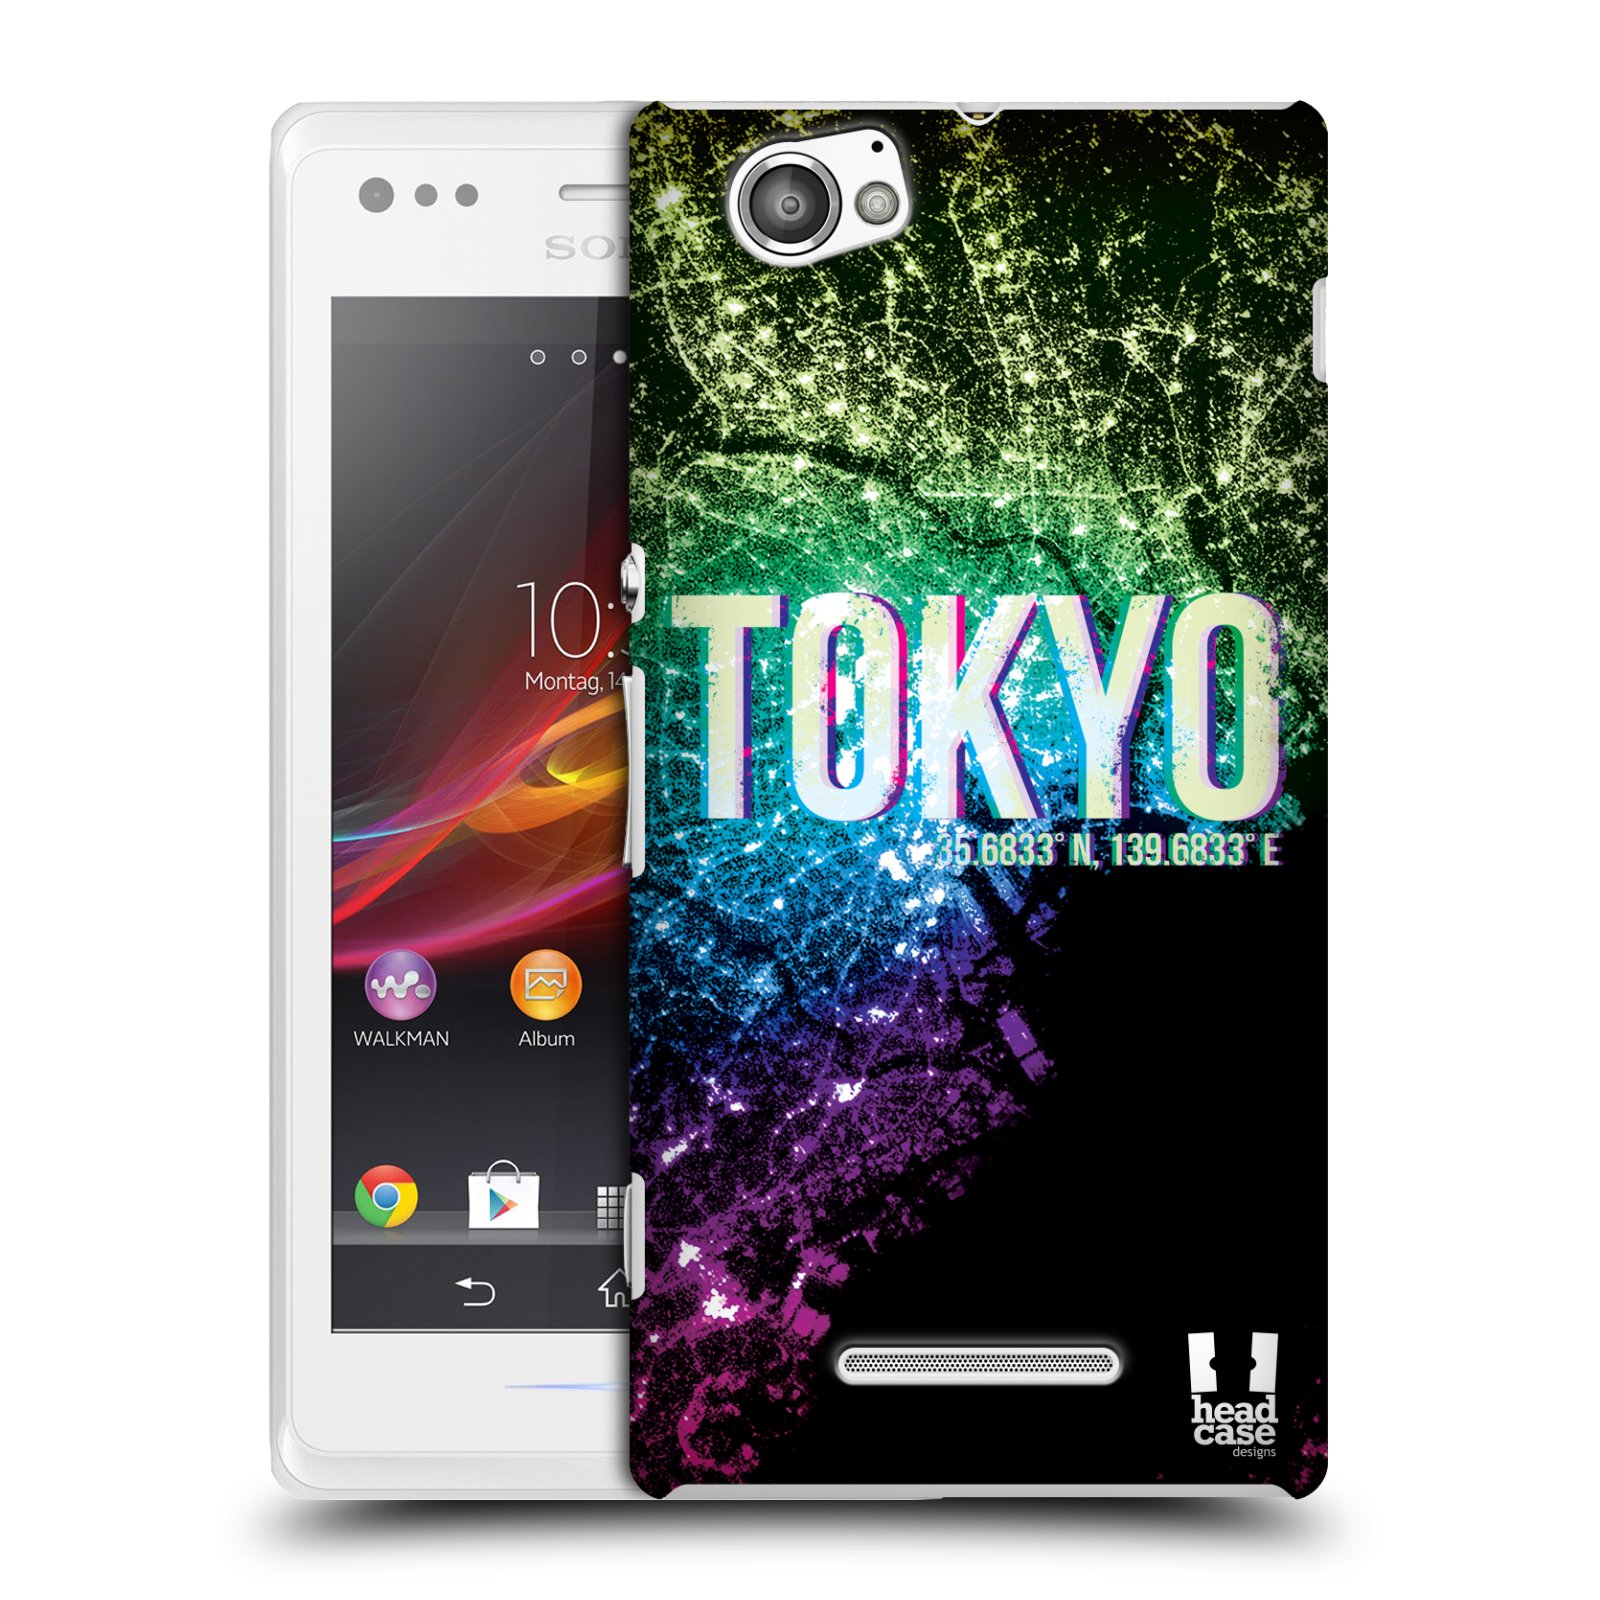 HEAD CASE plastový obal na mobil Sony Xperia M vzor Světla známých měst, Satelitní snímky zelená a fialová JAPONSKO, TOKYO